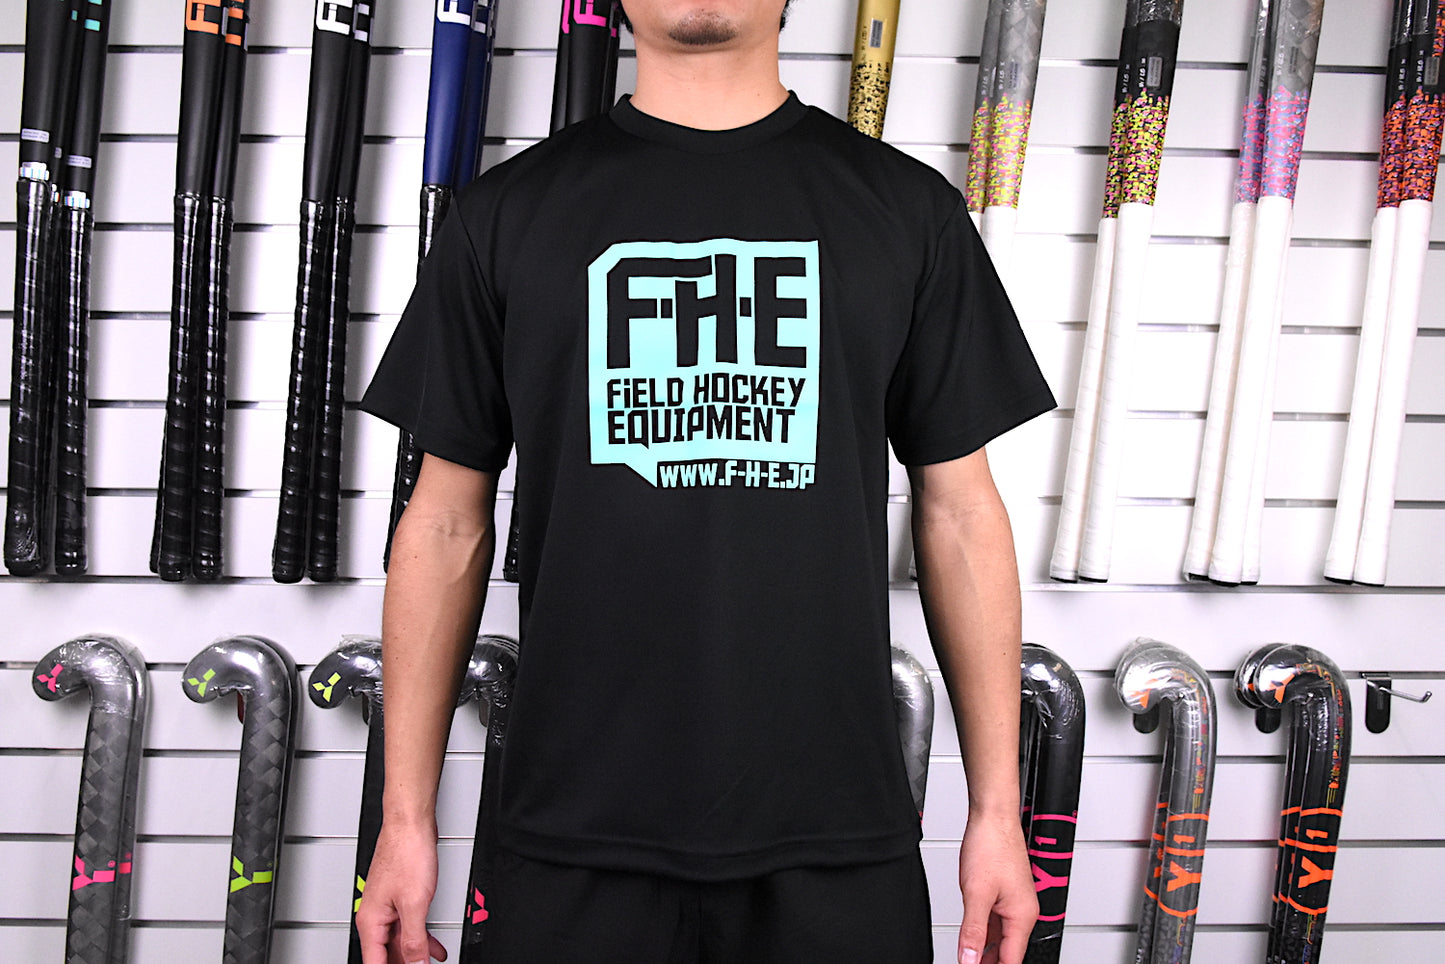 F-H-E Tシャツ ブラック/グレー【送料込】